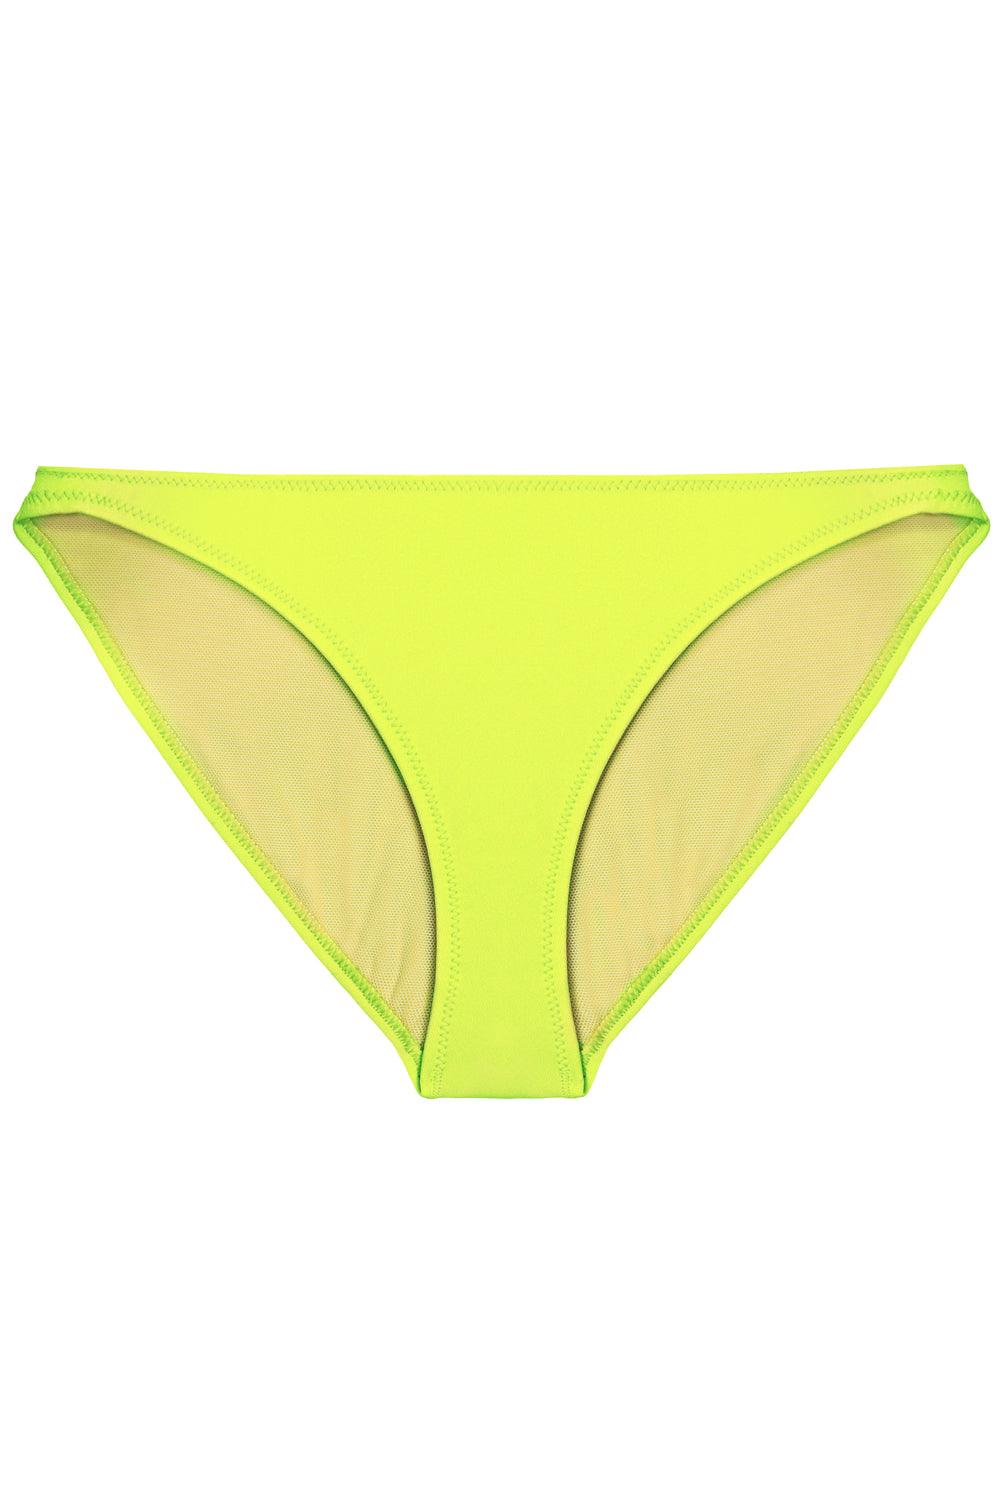 Tonic Yellow bikini bottom - yesUndress